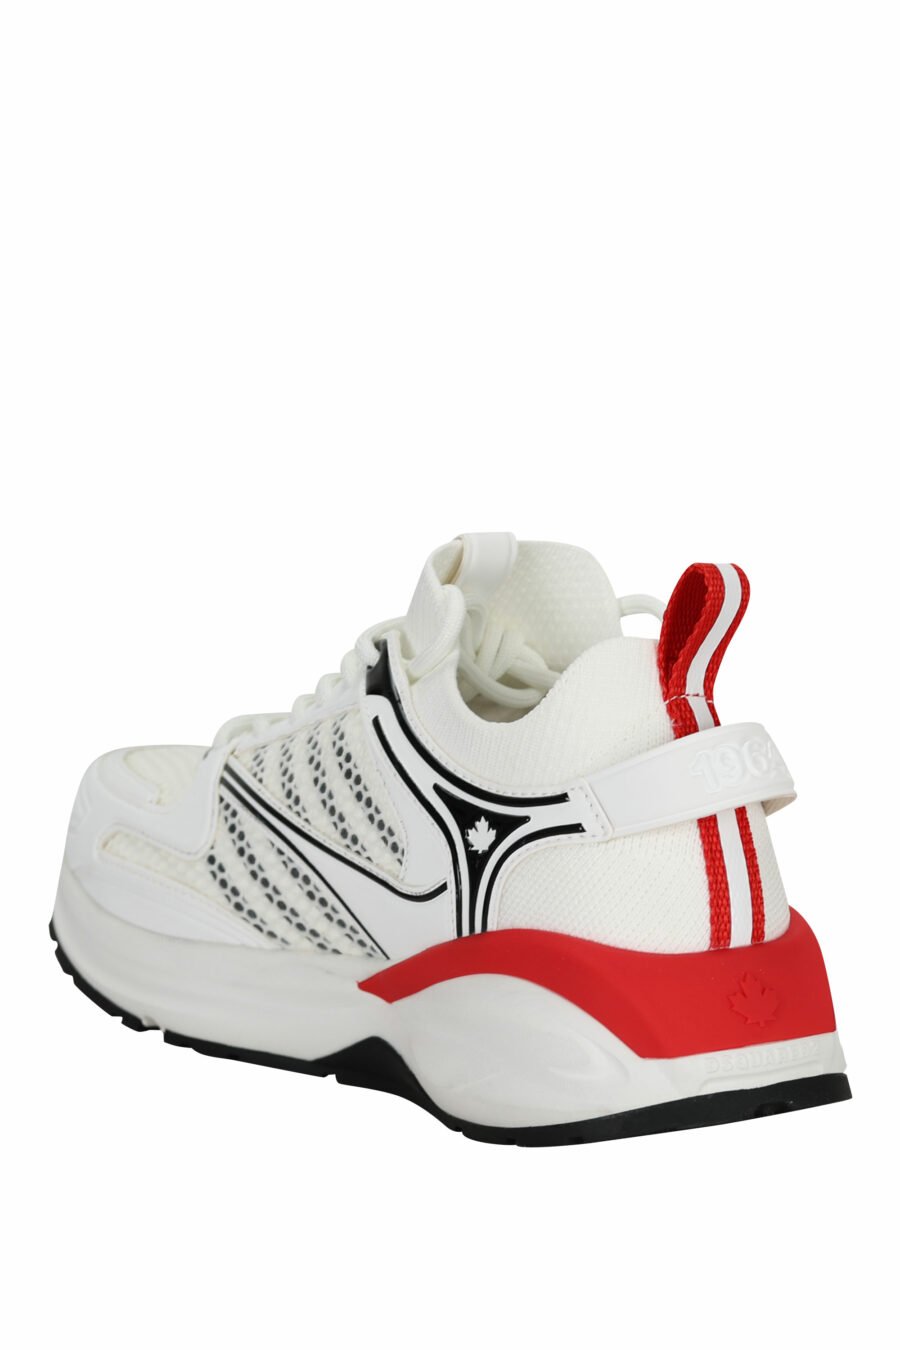 Zapatillas blancas "dash" con rojo - 805777318317 3